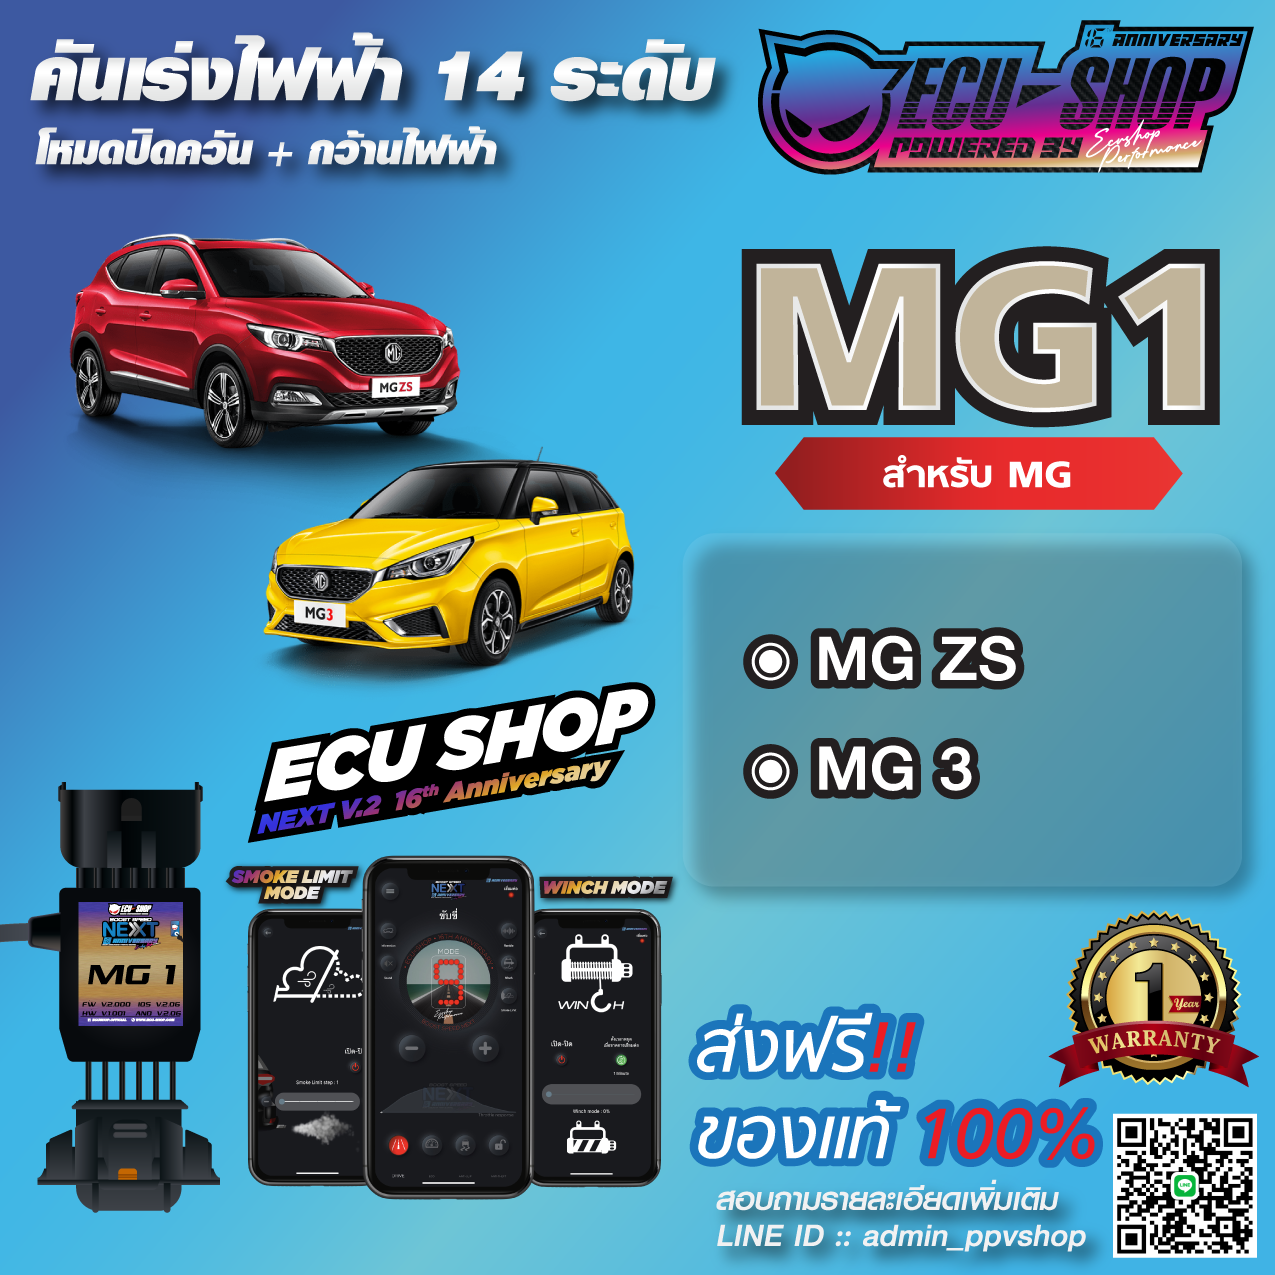 [ผ่อน 0%] MG1 คันเร่งไฟฟ้า ECU SHOP 16th สำหรับ MG ZS / MG 3 สินค้าคุณภาพ Boost Speed Next ปิดควัน เดินหอบ ใช้งานผ่าน App มือถือ